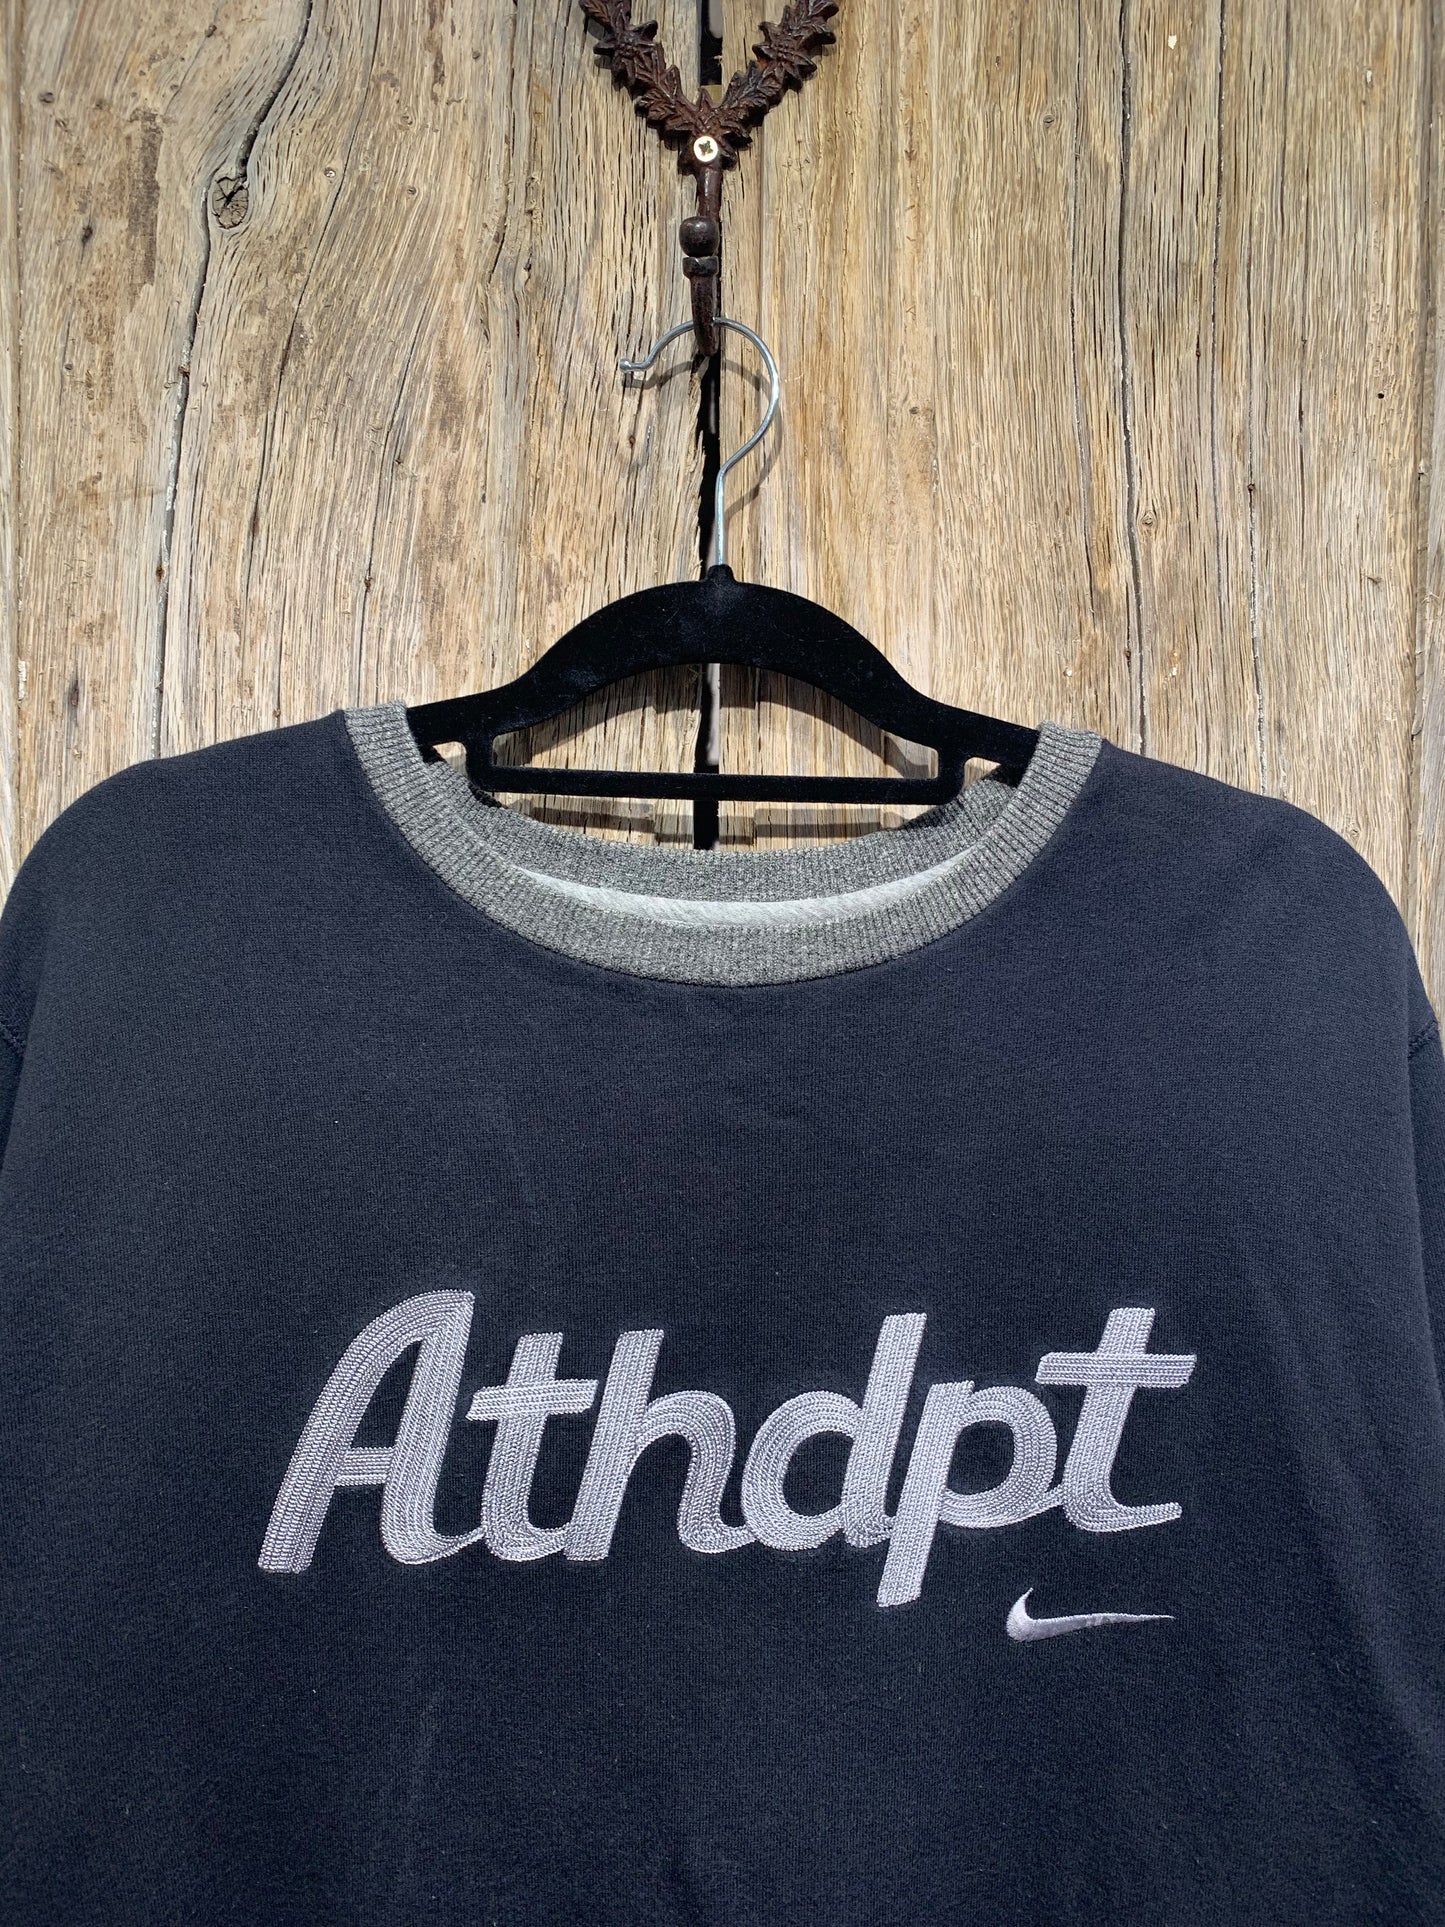 Vintage Nike Athdpt Chainstitch Logo Sweatshirt